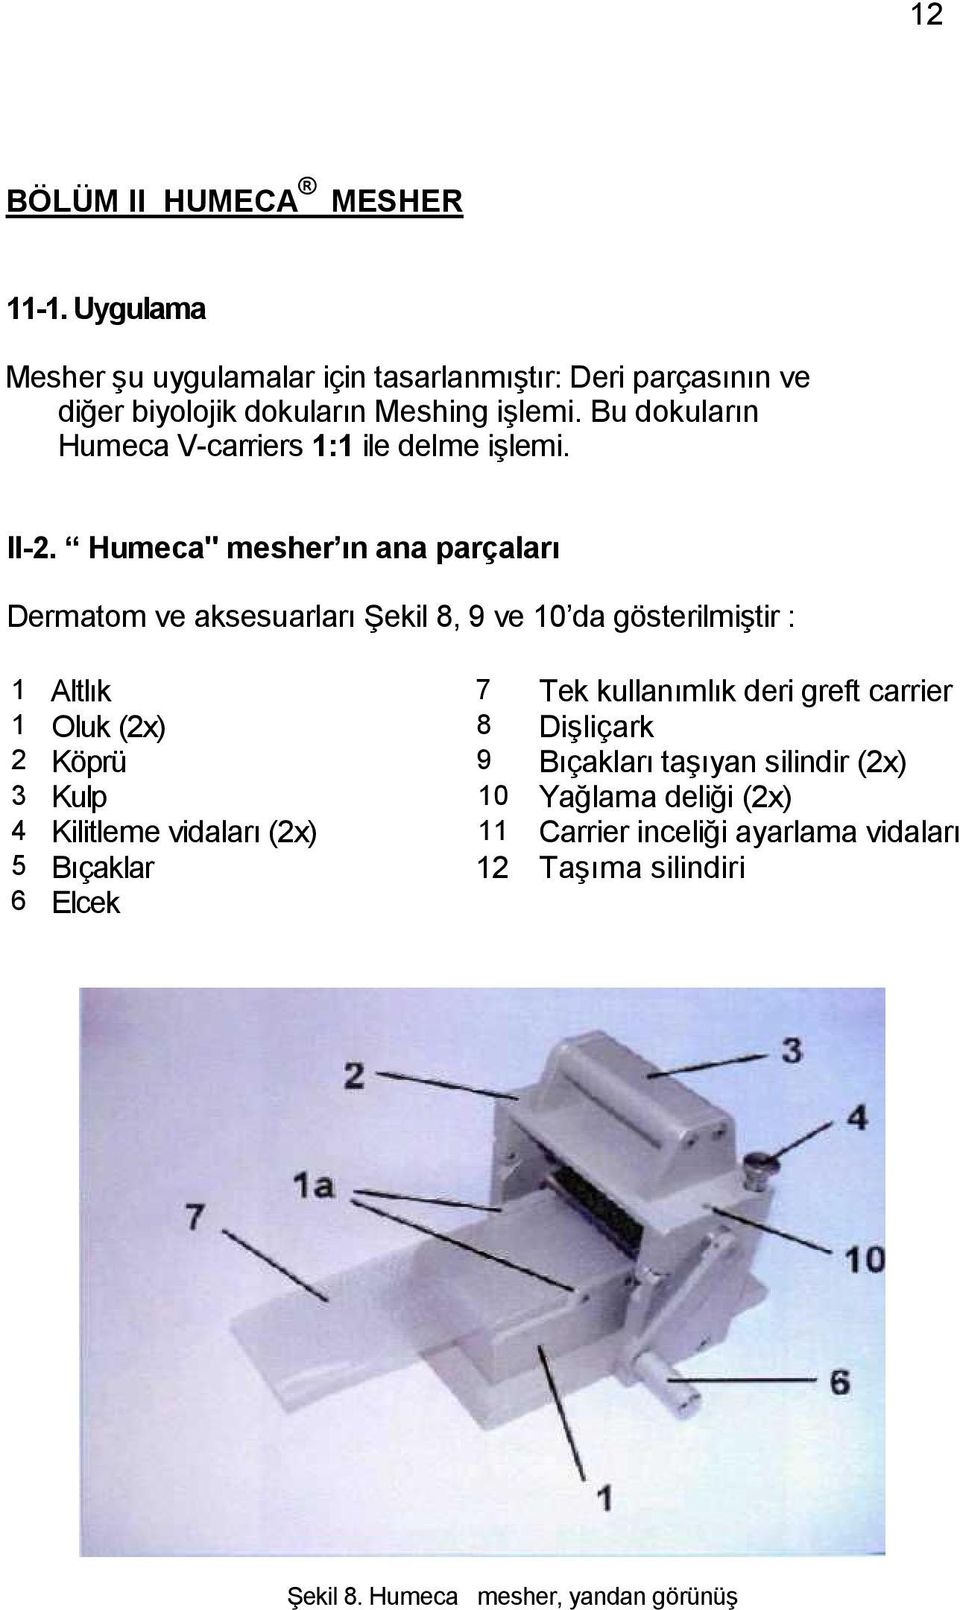 Humeca" mesher ın ana parçaları Dermatom ve aksesuarları Şekil 8, 9 ve 10 da gösterilmiştir : 1 Altlık 7 Tek kullanımlık deri greft carrier 1